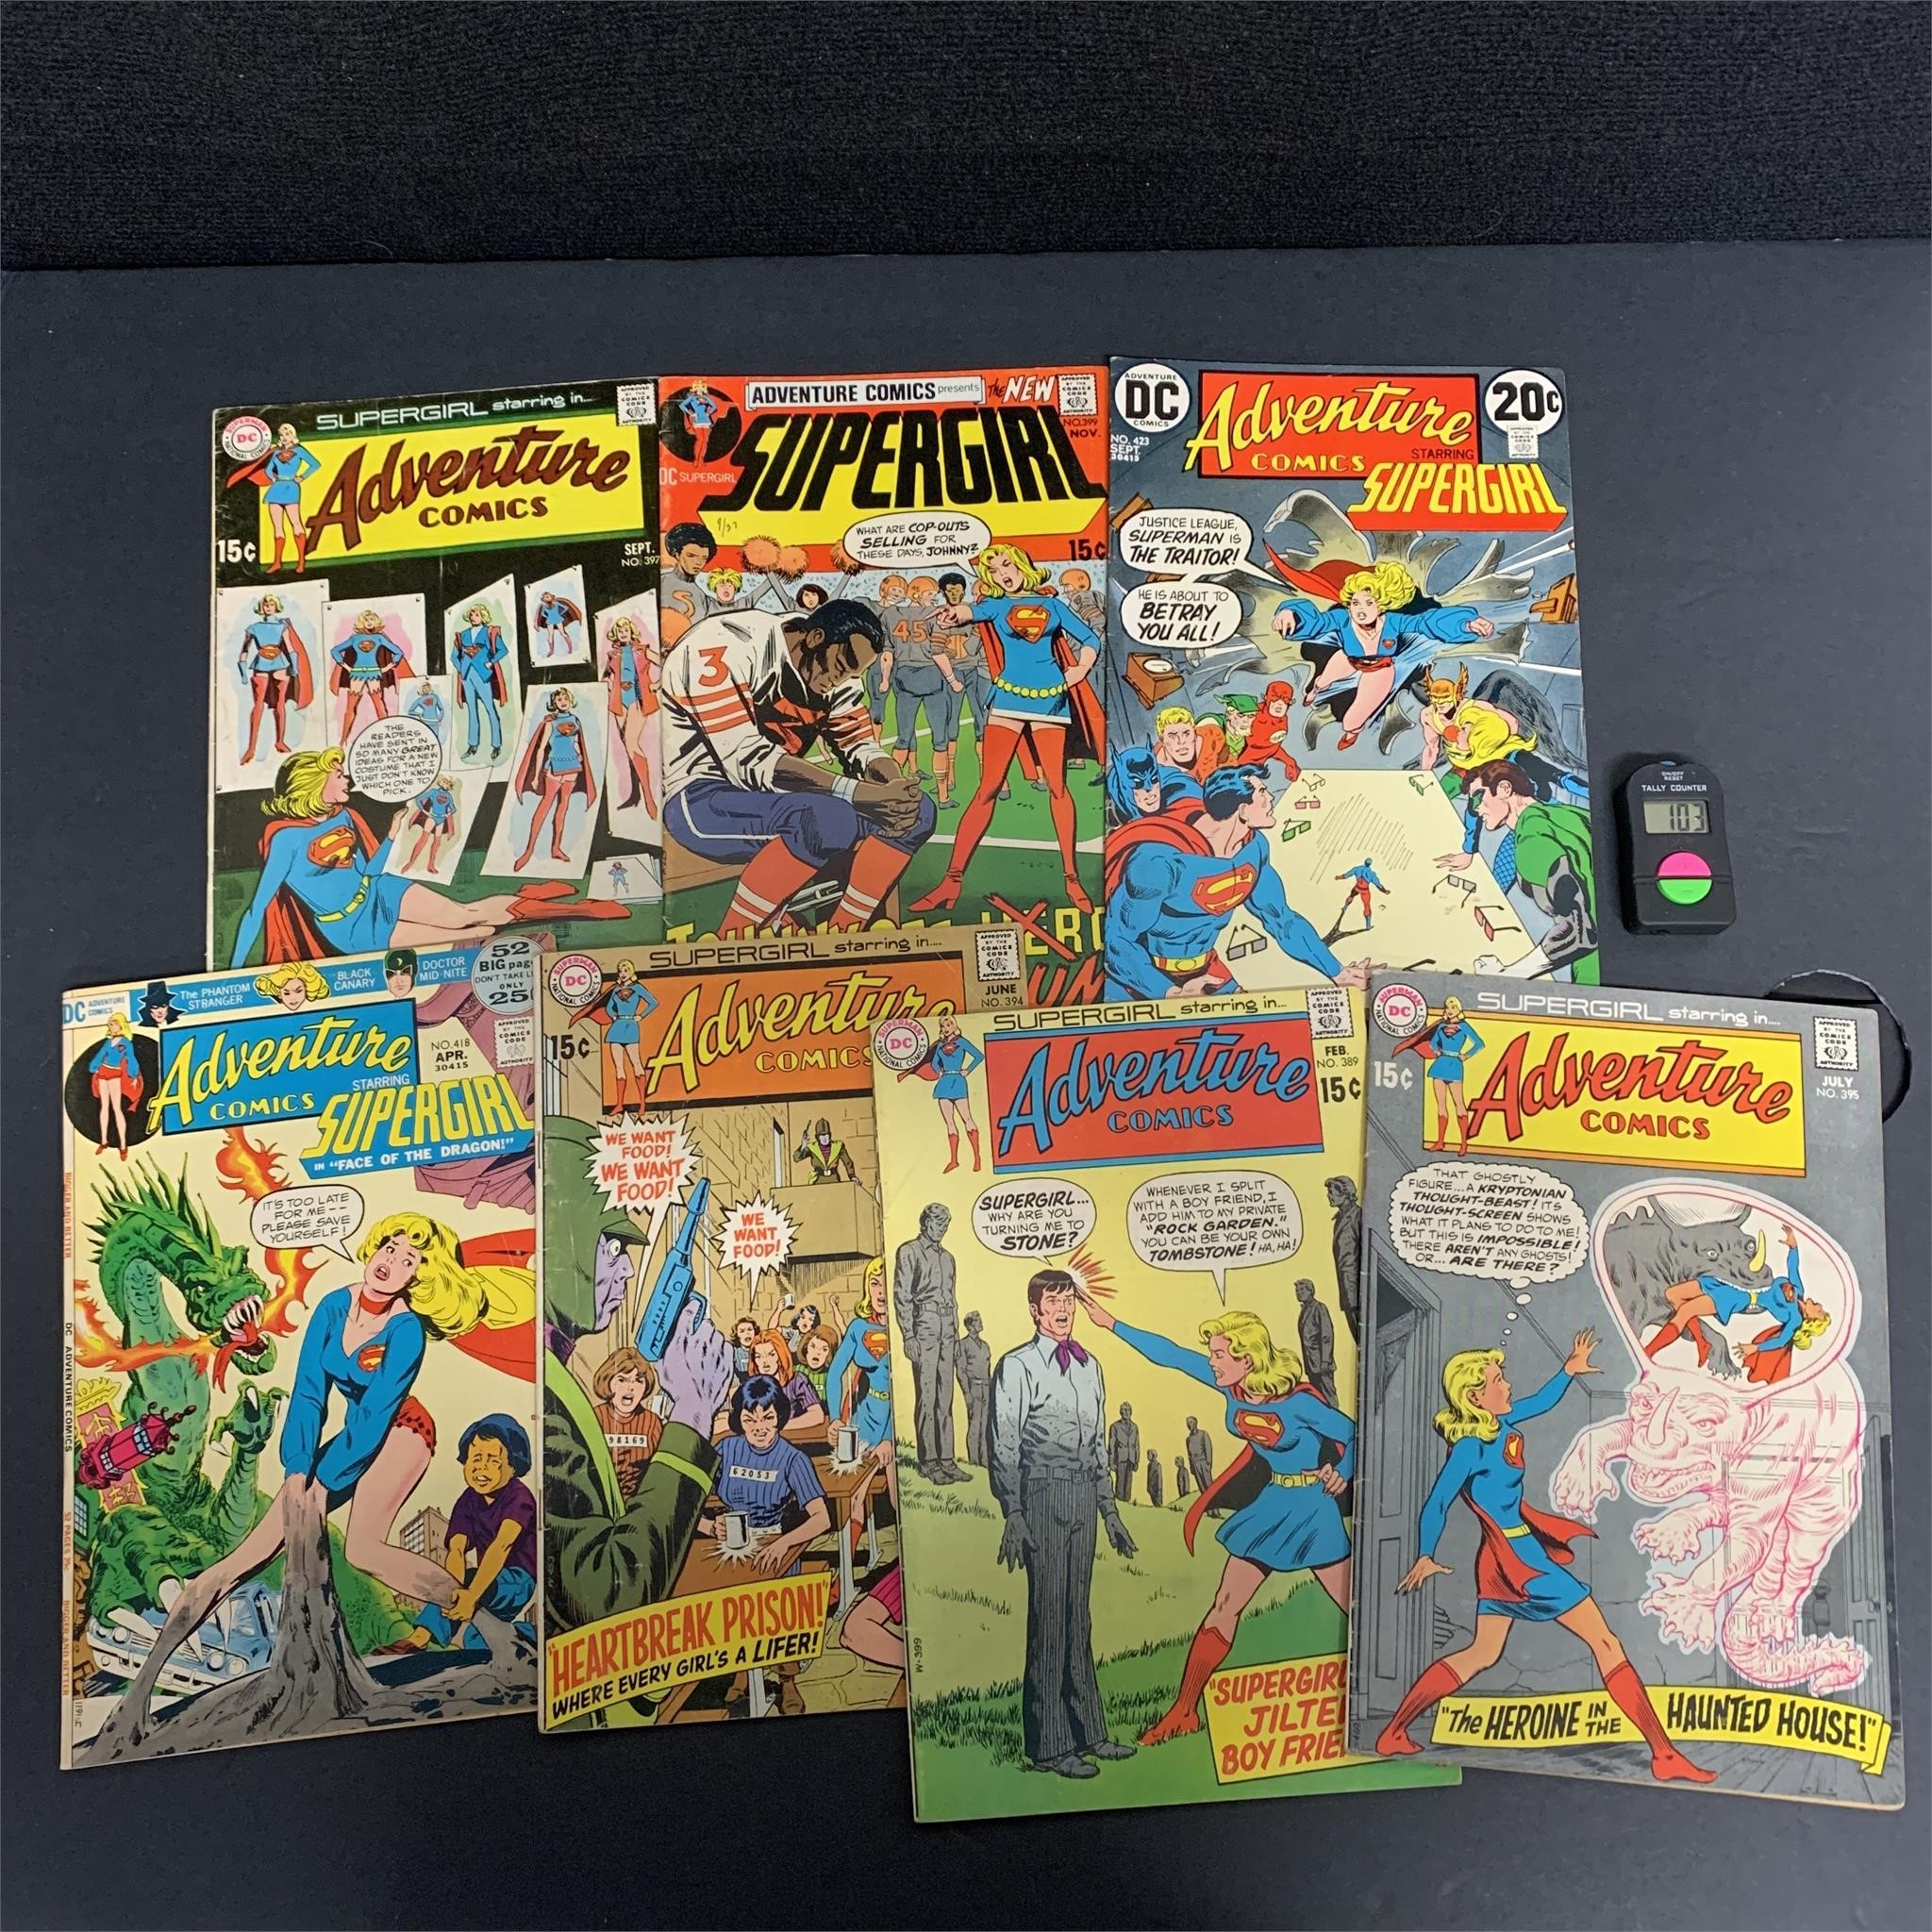 Aeron House Spring Comic & Collectibles Auction